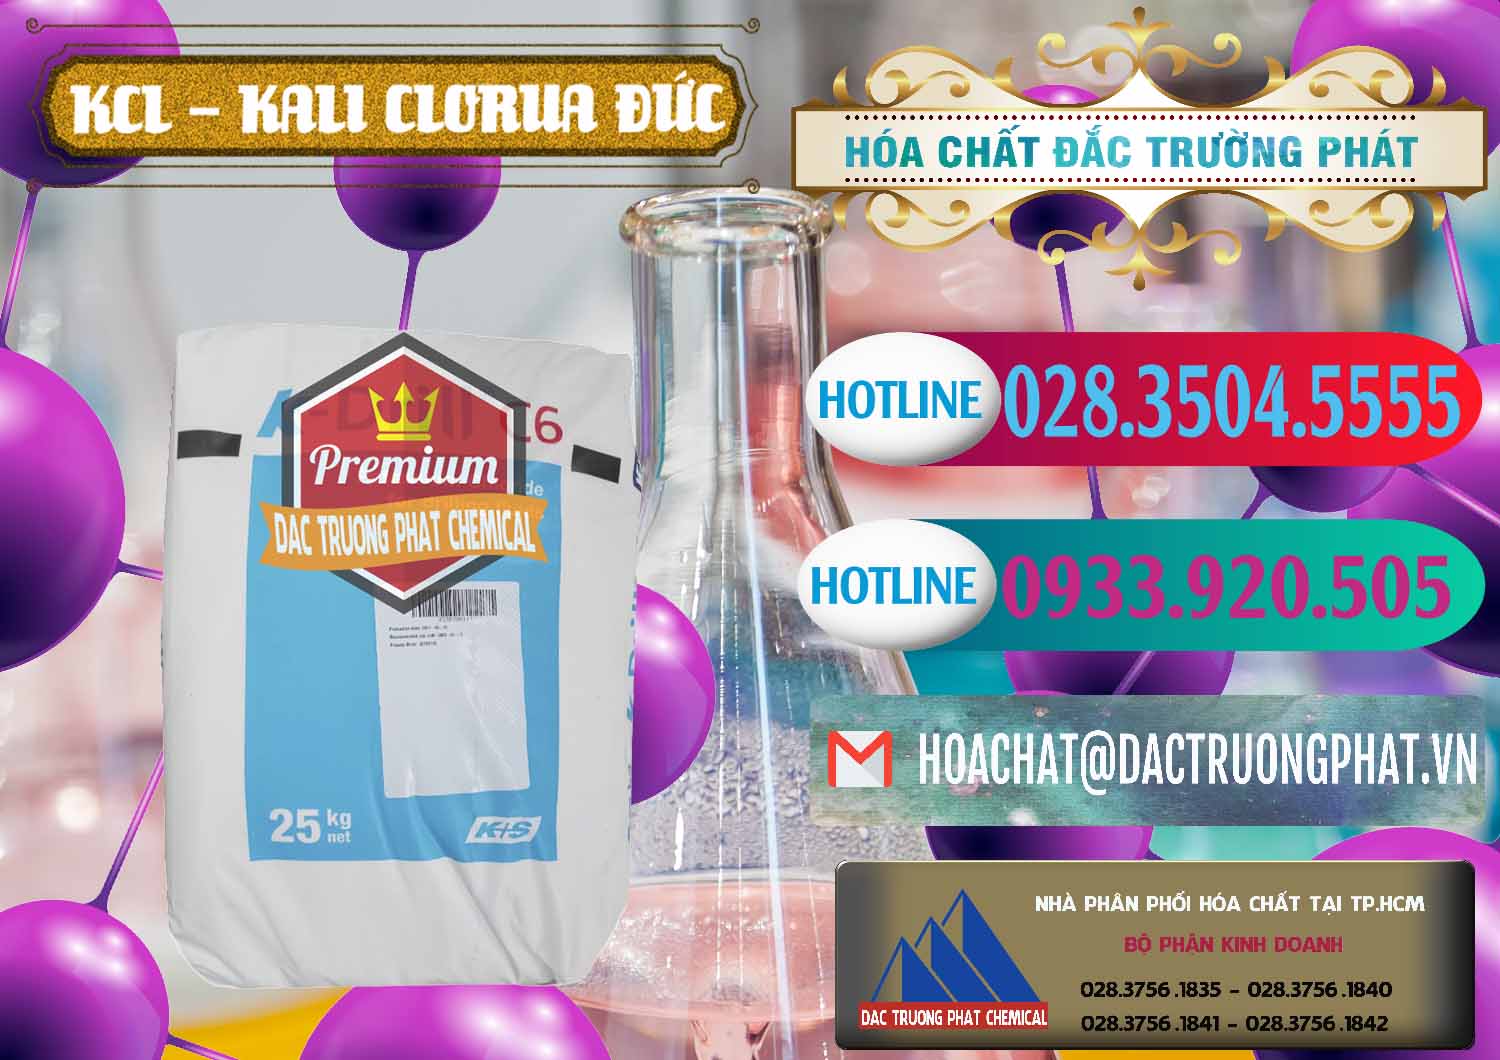 Công ty chuyên bán và cung ứng KCL – Kali Clorua Trắng K DRILL Đức Germany - 0428 - Cty phân phối - kinh doanh hóa chất tại TP.HCM - truongphat.vn